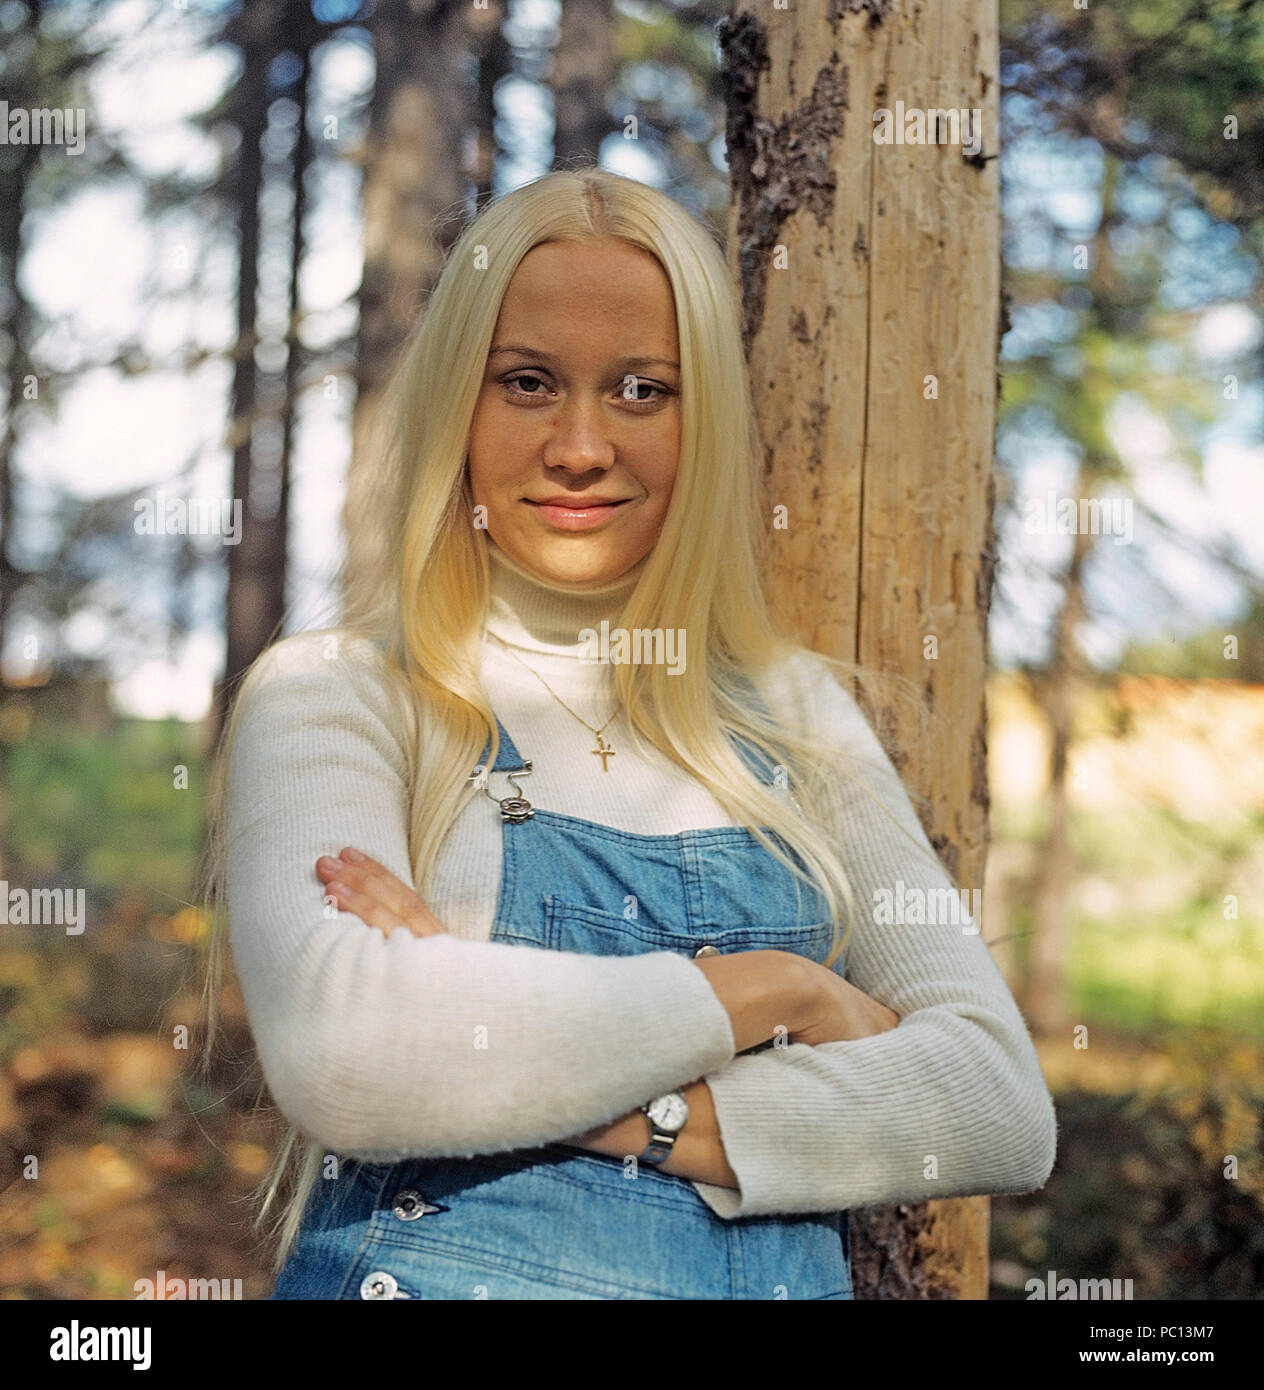 Agnetha Fältskog. Sänger. Mitglied der Popgruppe ABBA. Geboren 1950. Hier  im Bild 1972 Stockfotografie - Alamy